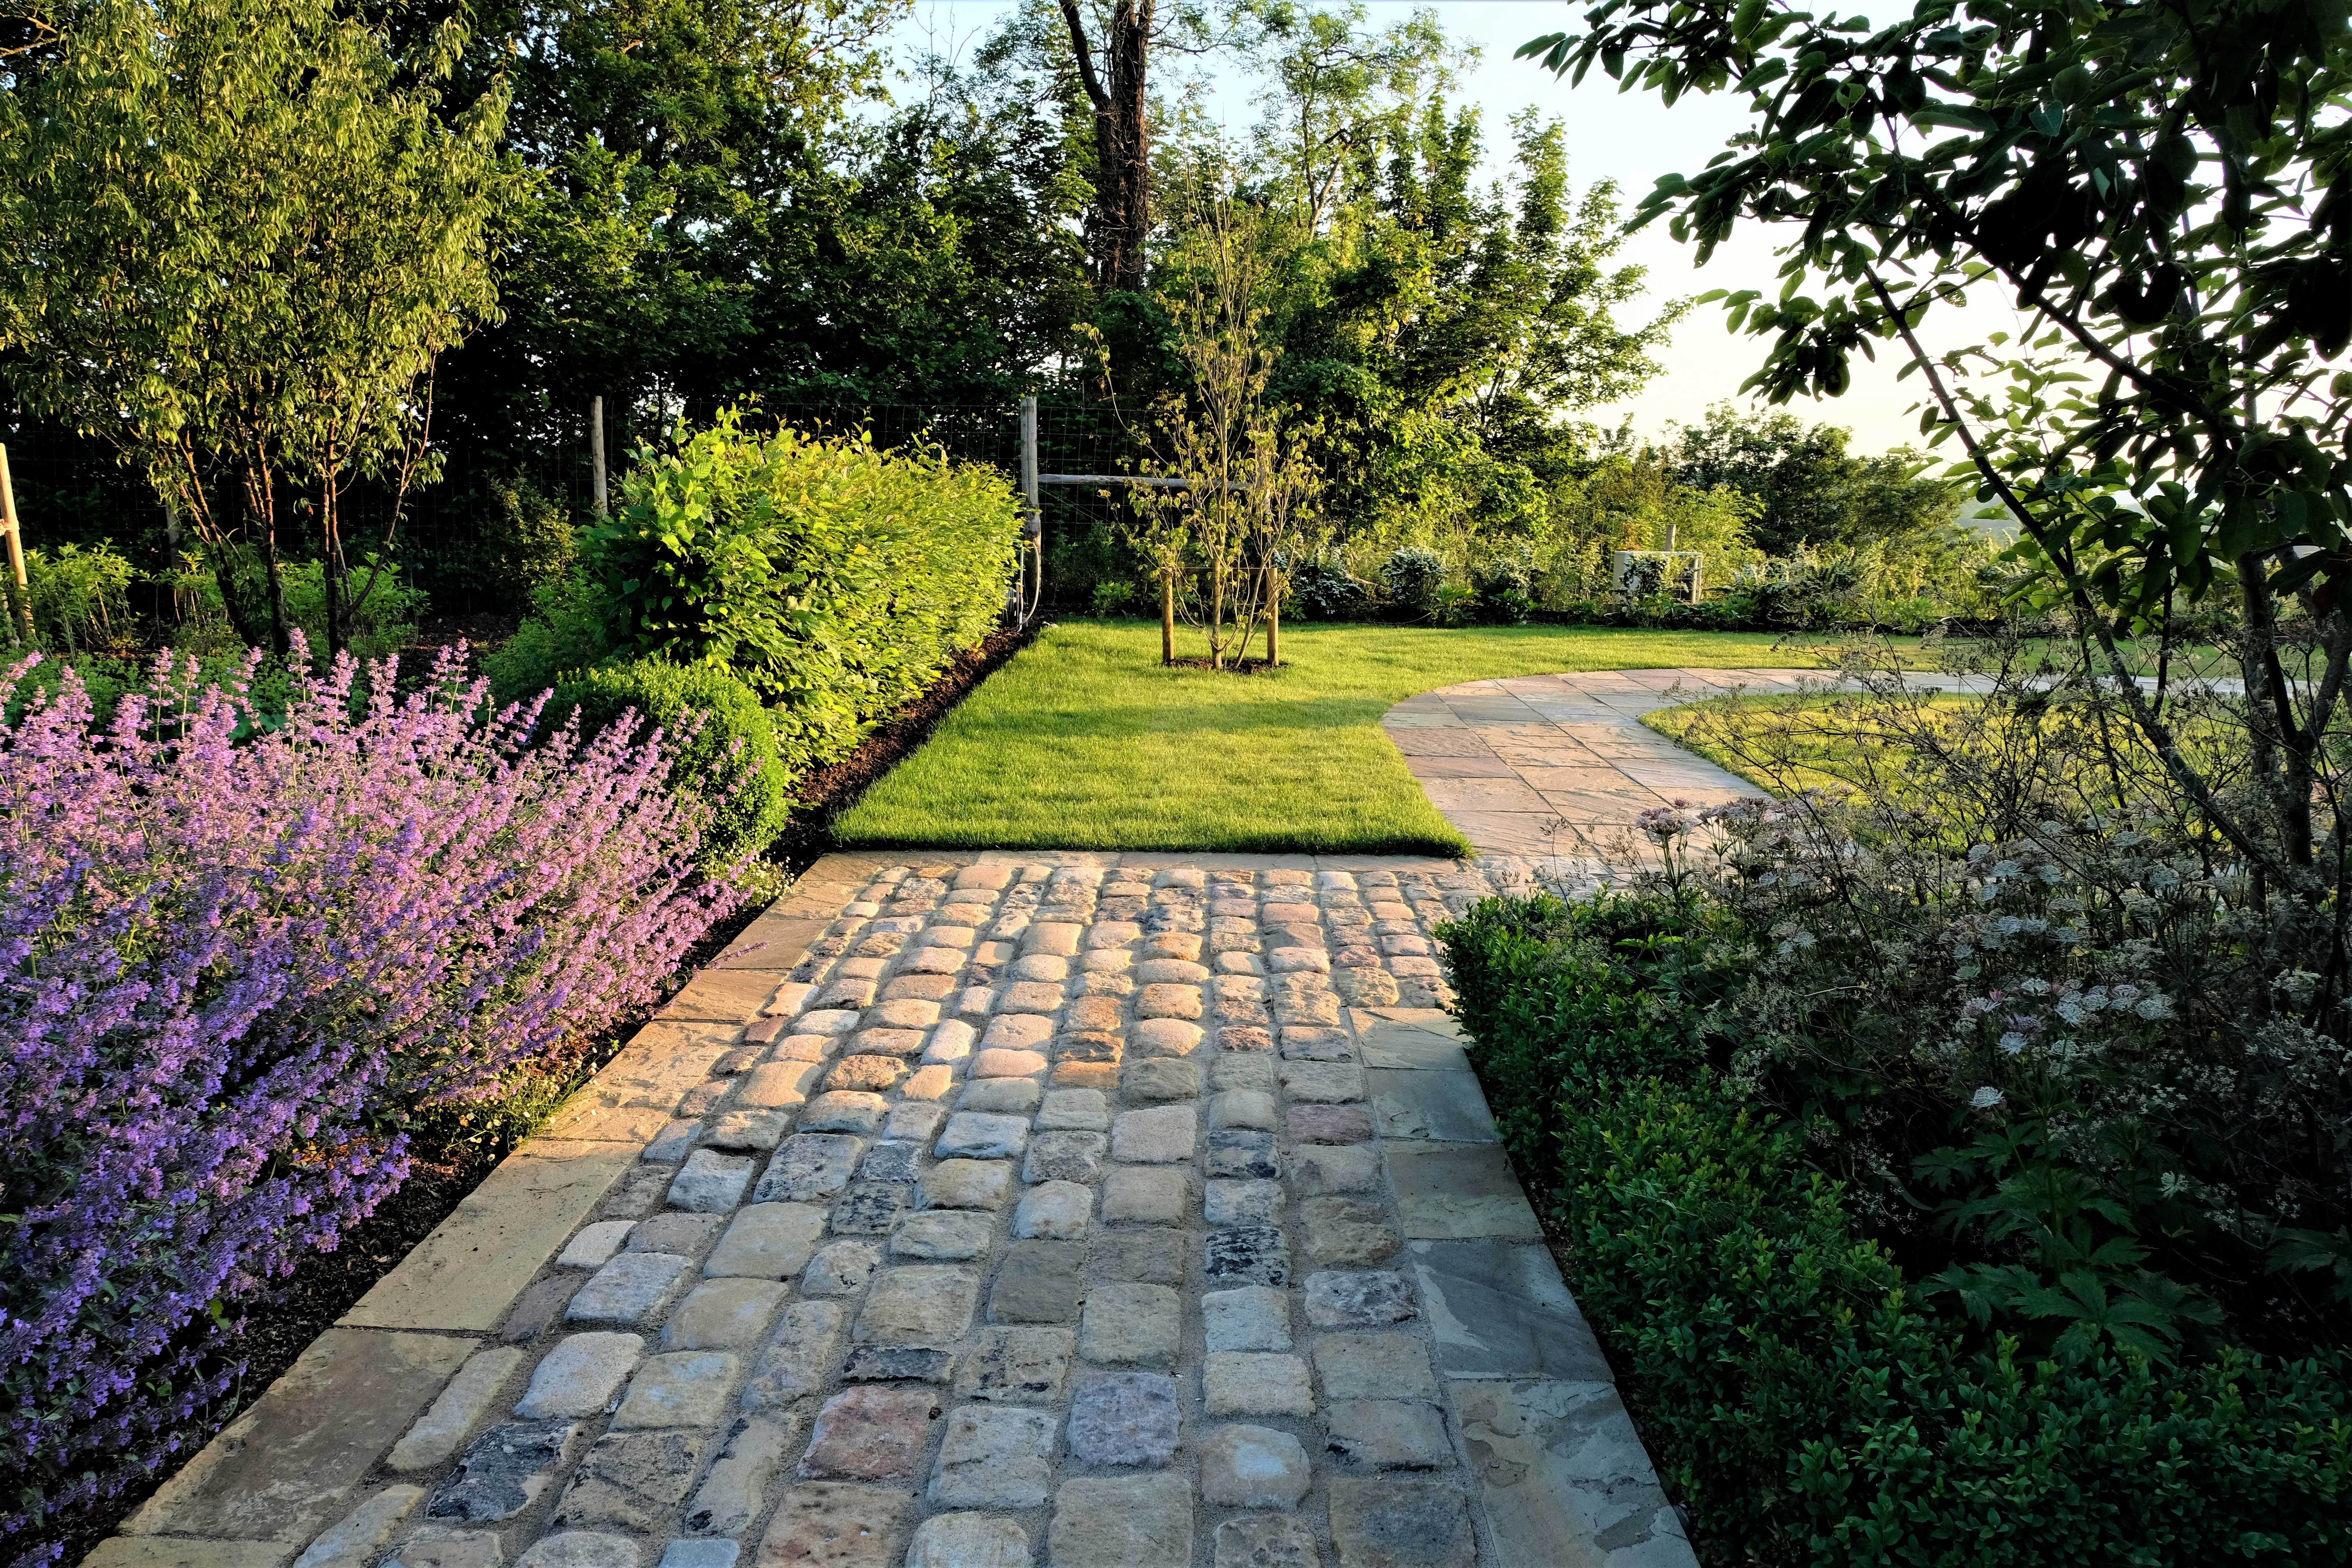 Cobble stone pathways